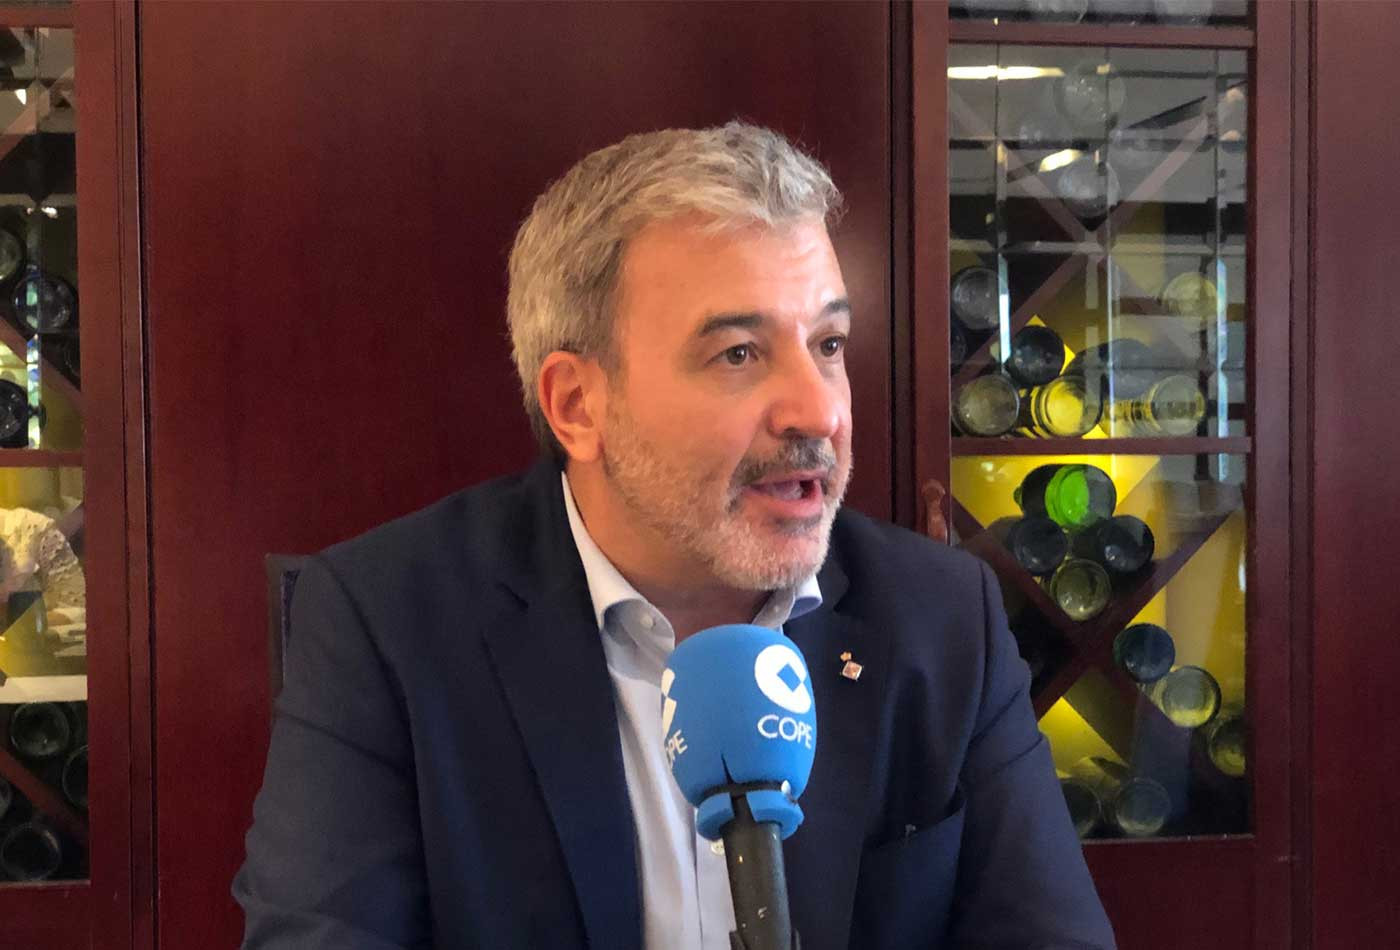 Jaume Collboni, en la entrevista en el programa 'Converses' de la Cadena Cope, con 'Metrópoli' / MA